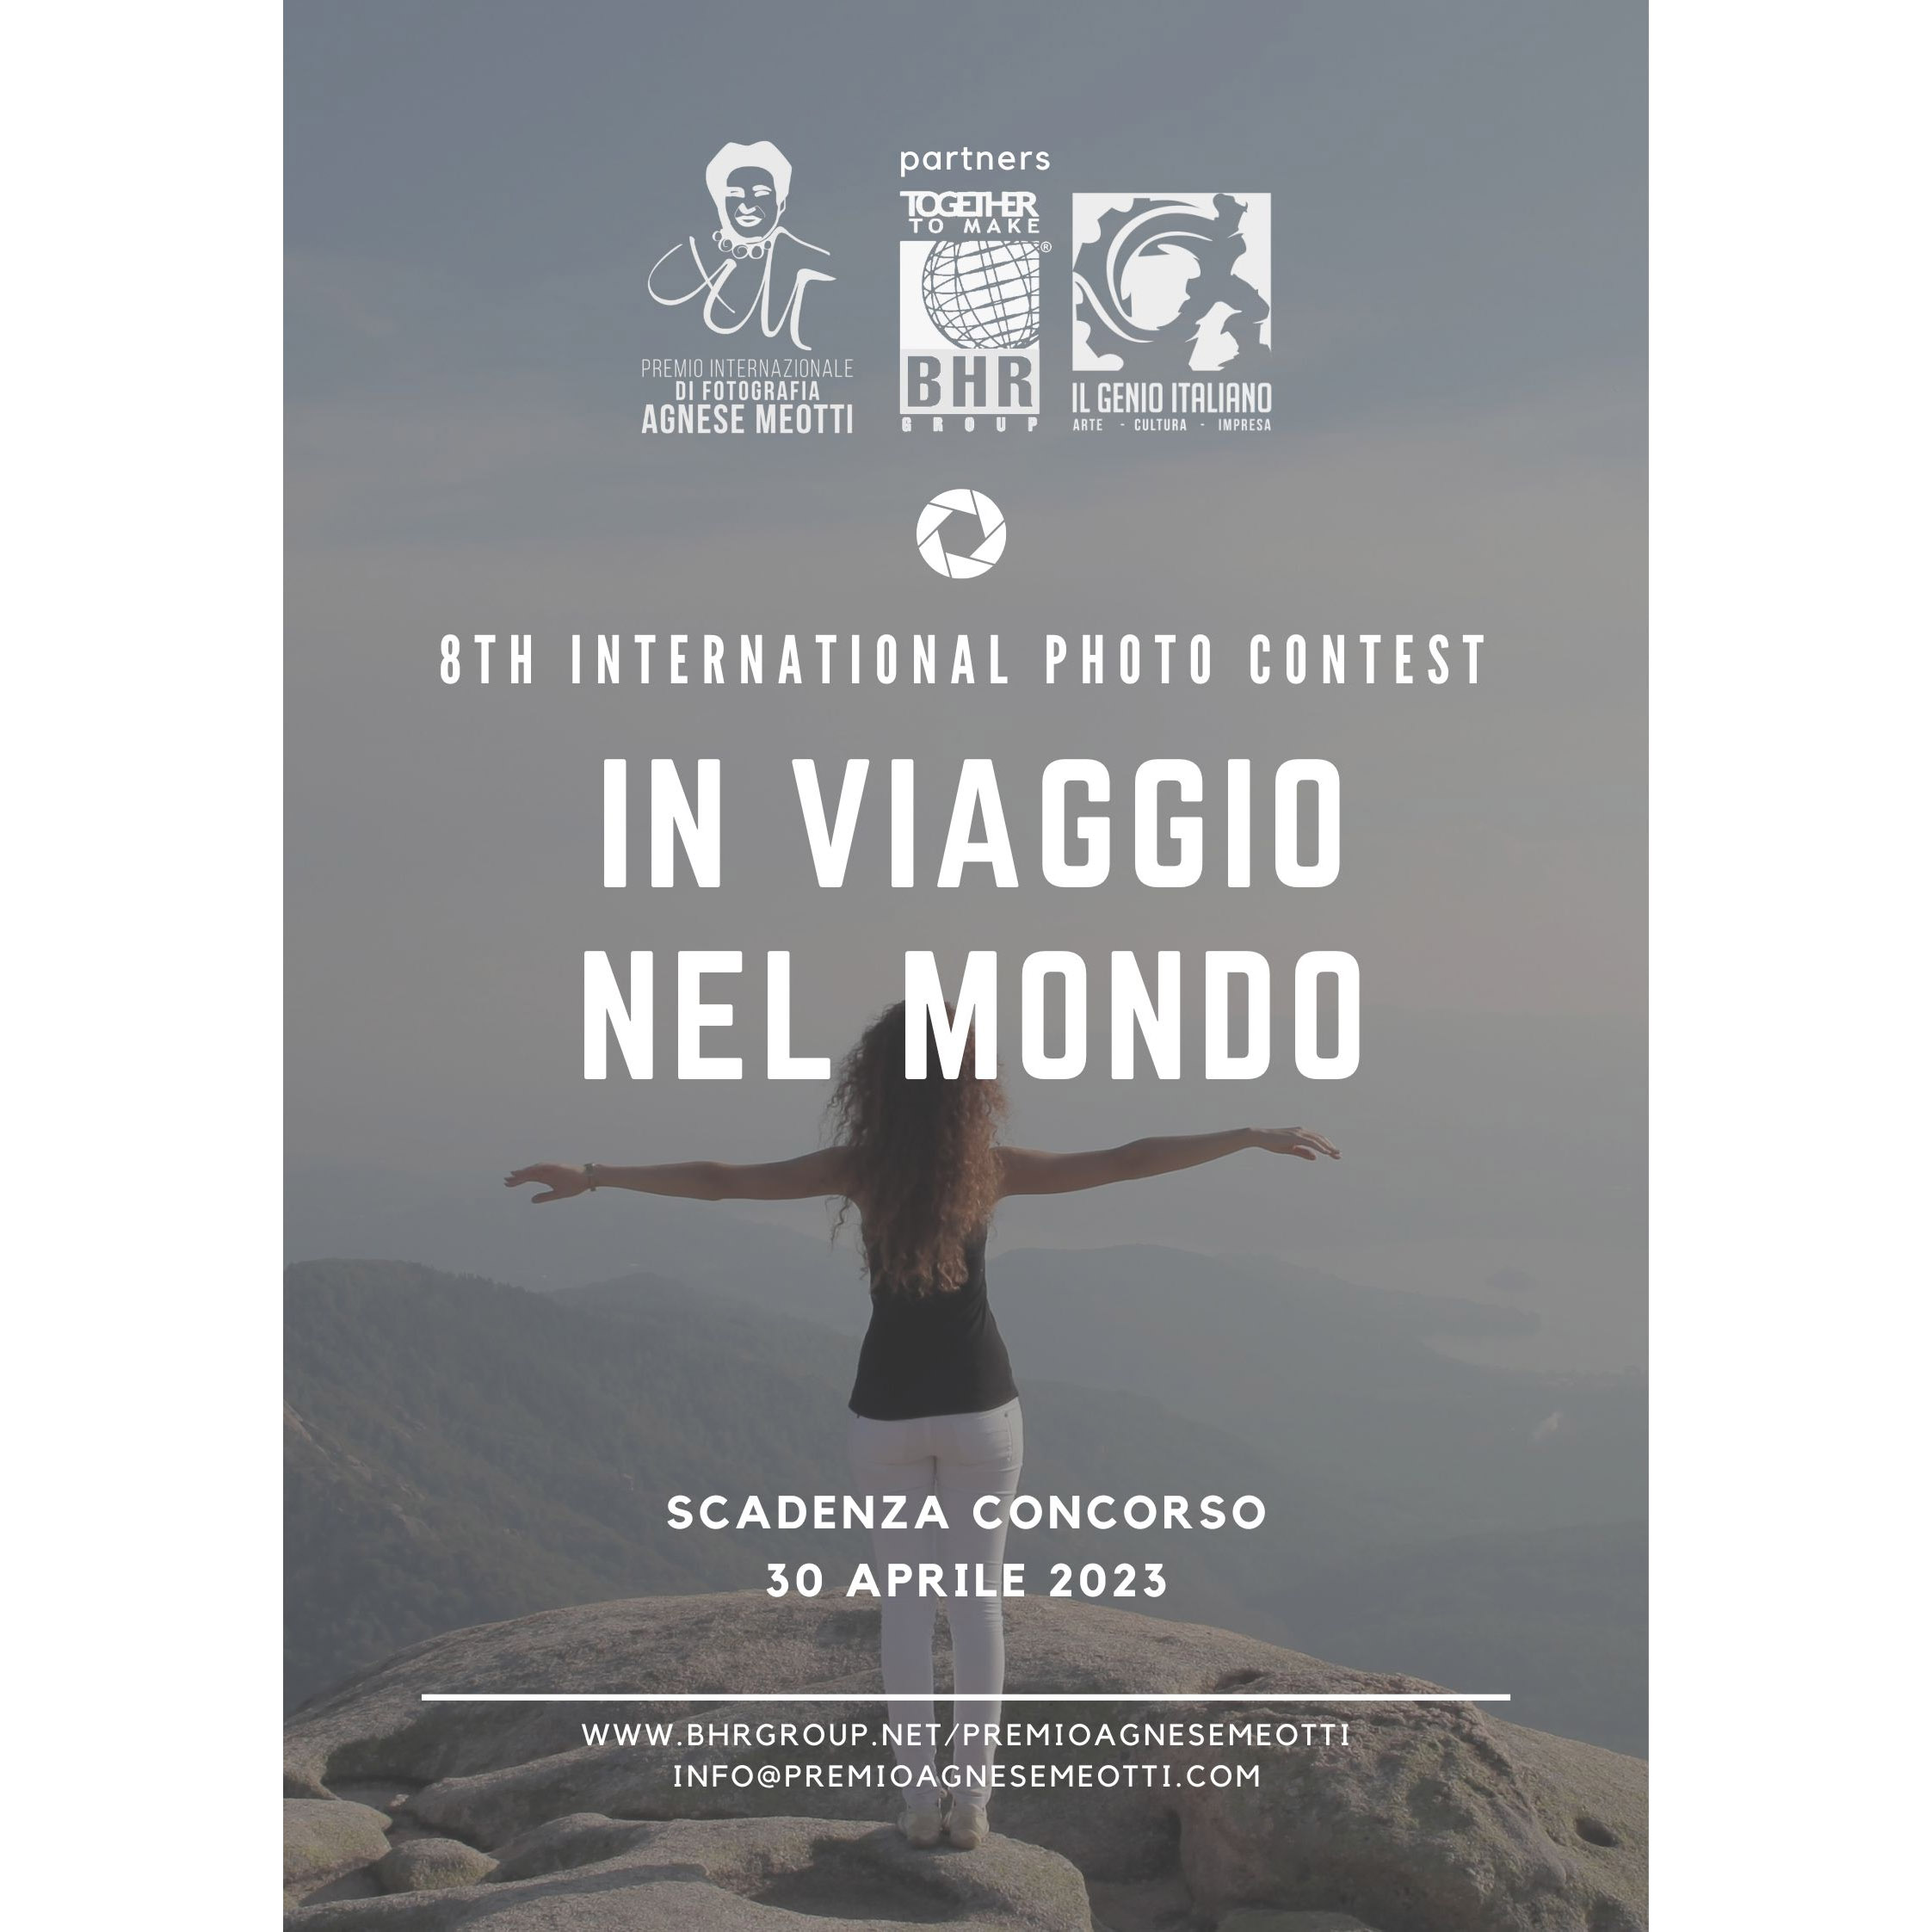 Premio Internazionale di Fotografia “Agnese Meotti” - “In viaggio nel mondo” - VIII edizione